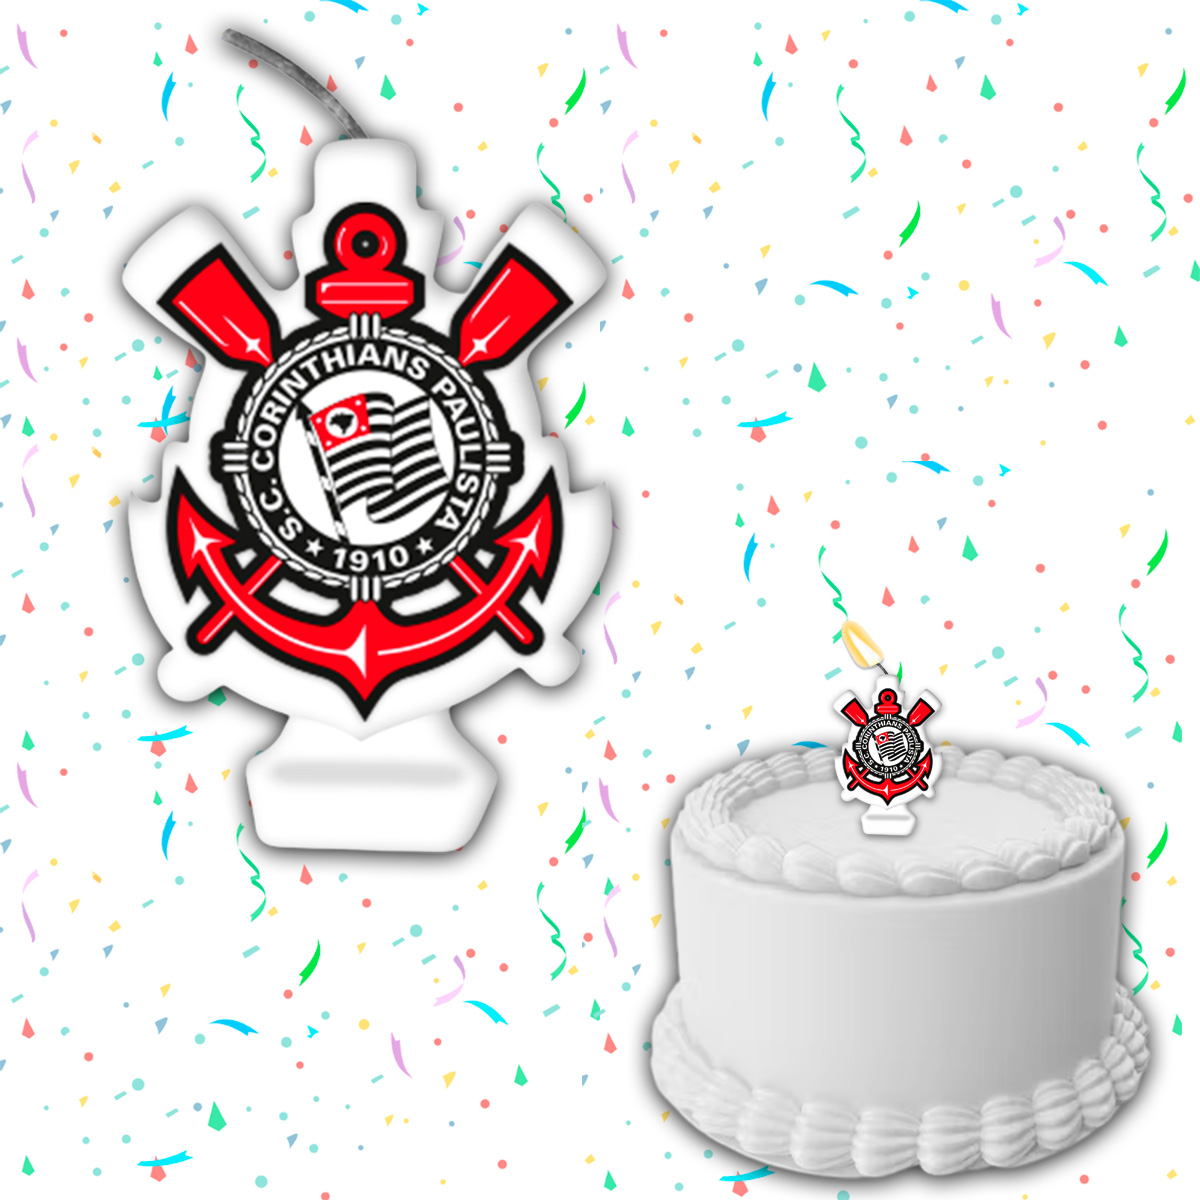 Vela Corinthians Para Bolo de Aniversário - Festcolor